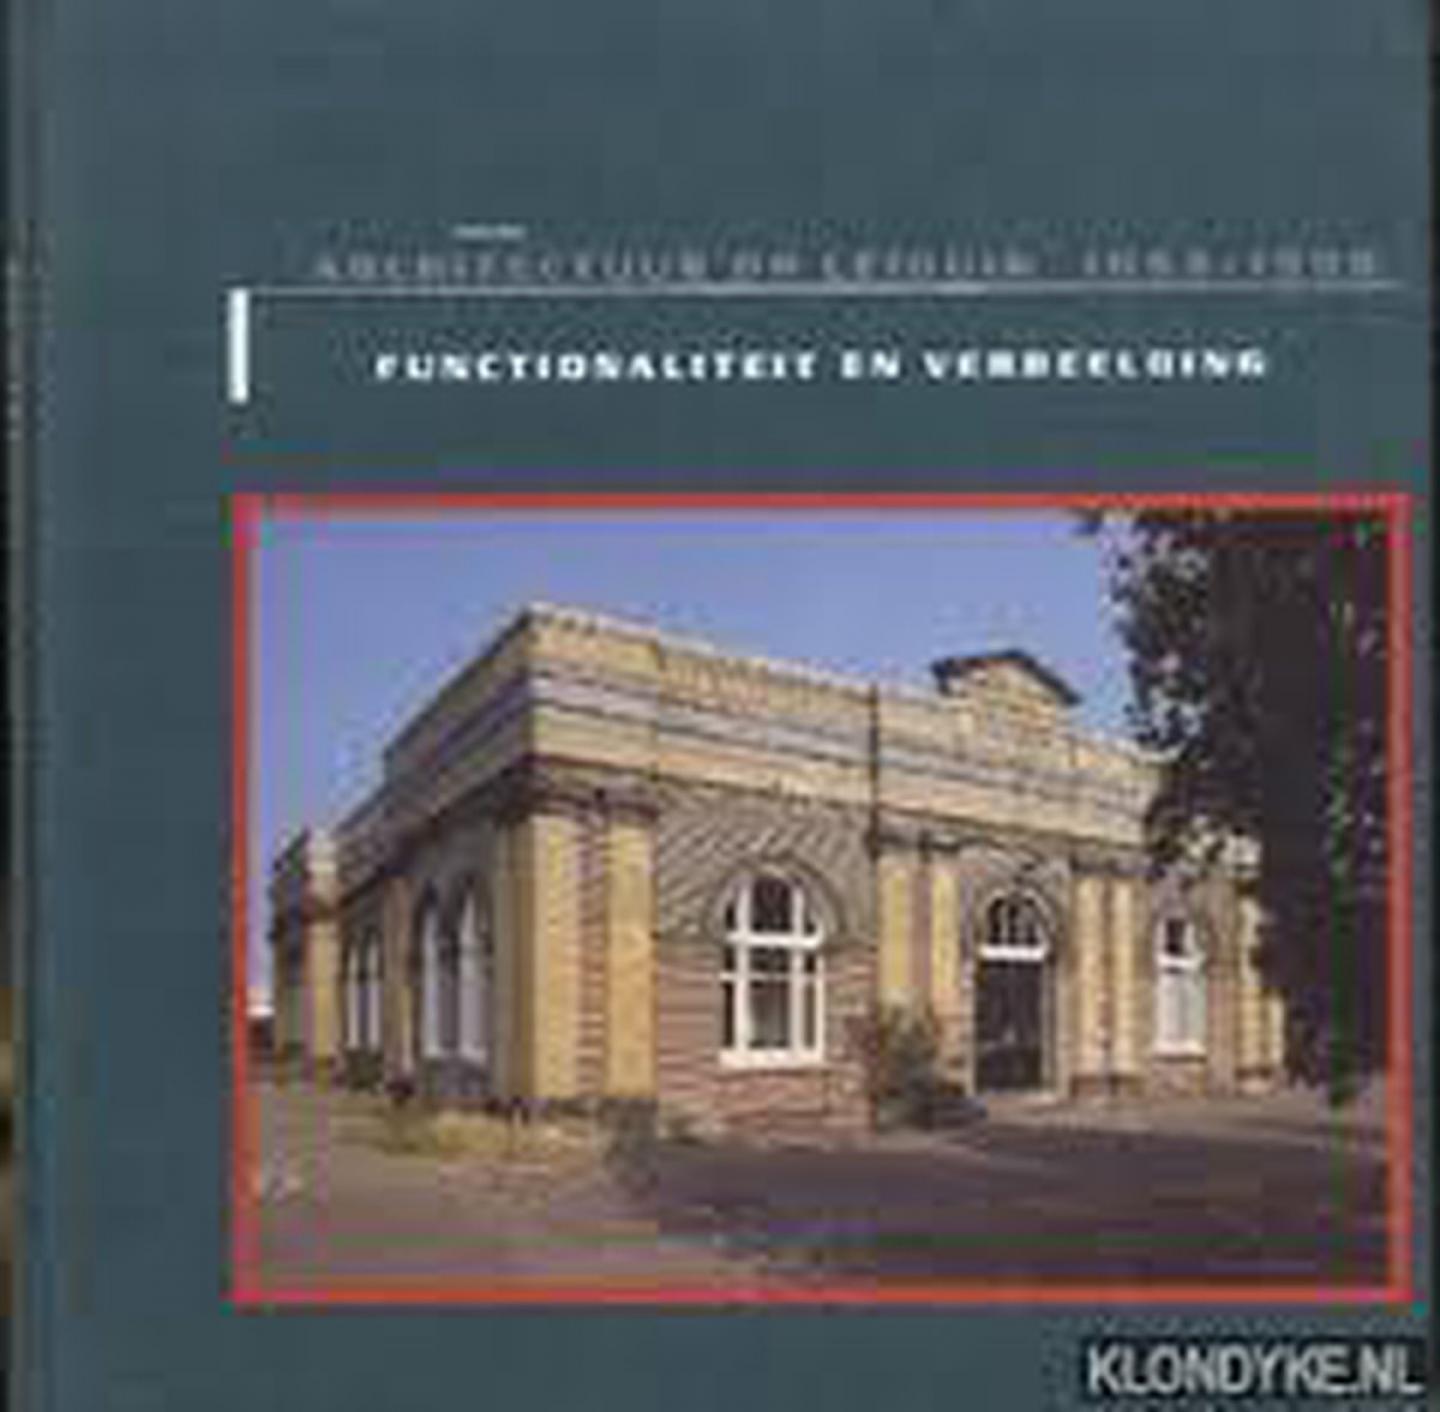 Wagt, W. de - Architectuur op Leiduin 1853-1995. - Functionaliteit en verbeelding. De gebouwen van Gemeentewaterleidingen nabij de Amsterdamse waterleidingduinen.